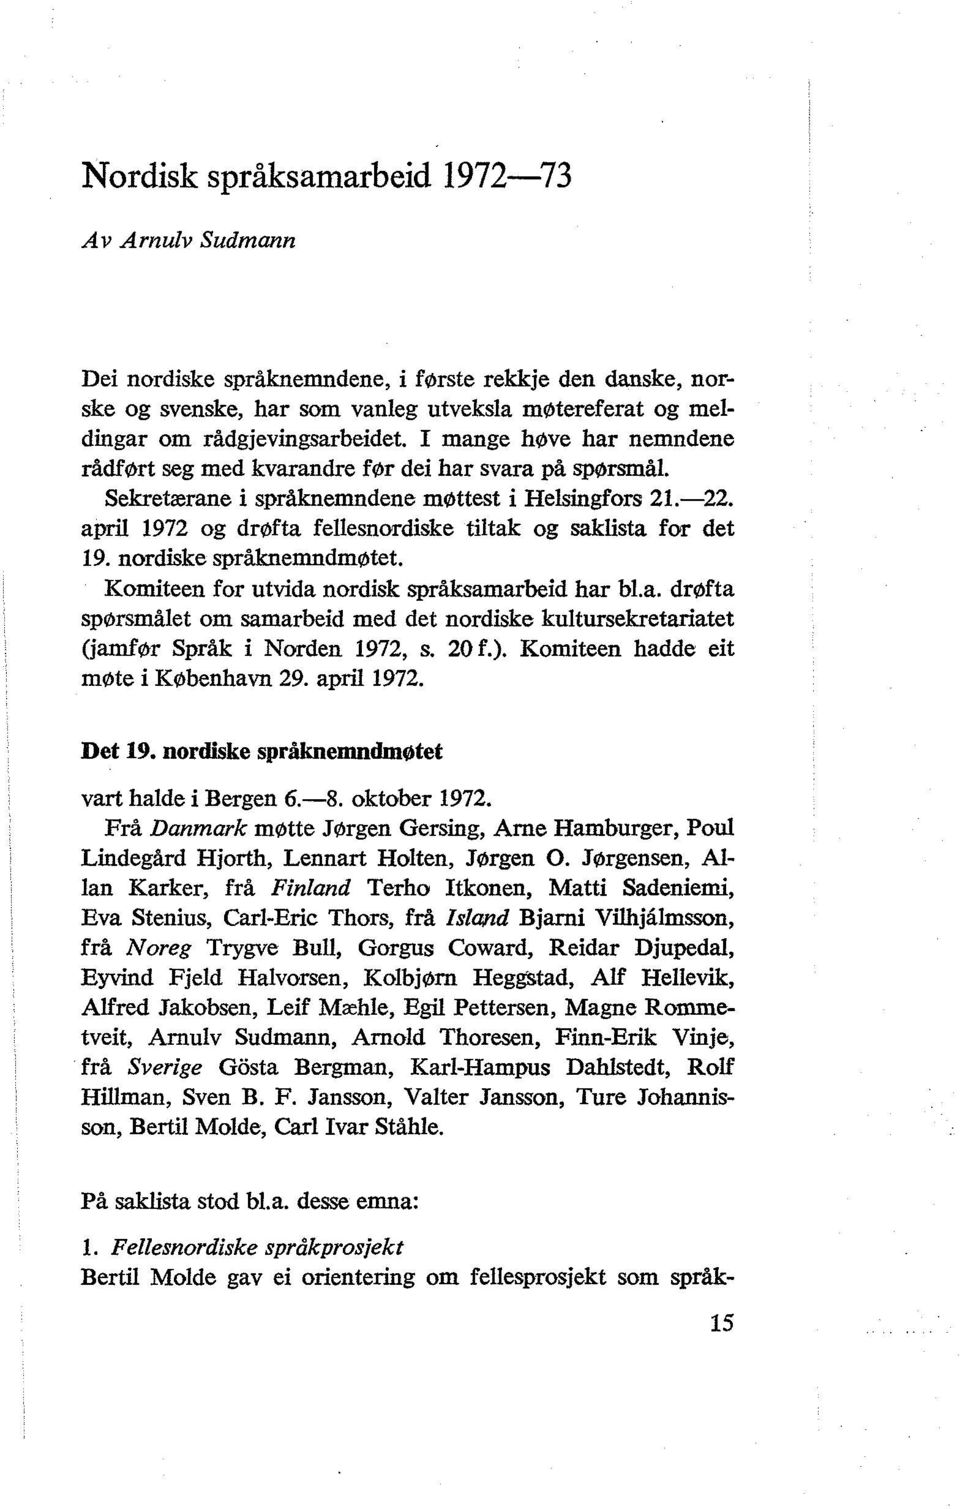 april 1972 og drøfta fellesnordiske tiltak og saklista for det 19. nordiske språknemndmøtet. Komiteen for utvida nordisk språksamarbeid har bl.a. drøfta spørsmålet om samarbeid med det nordiske kultursekretariatet (jamfør Språk i Norden 1972, s.